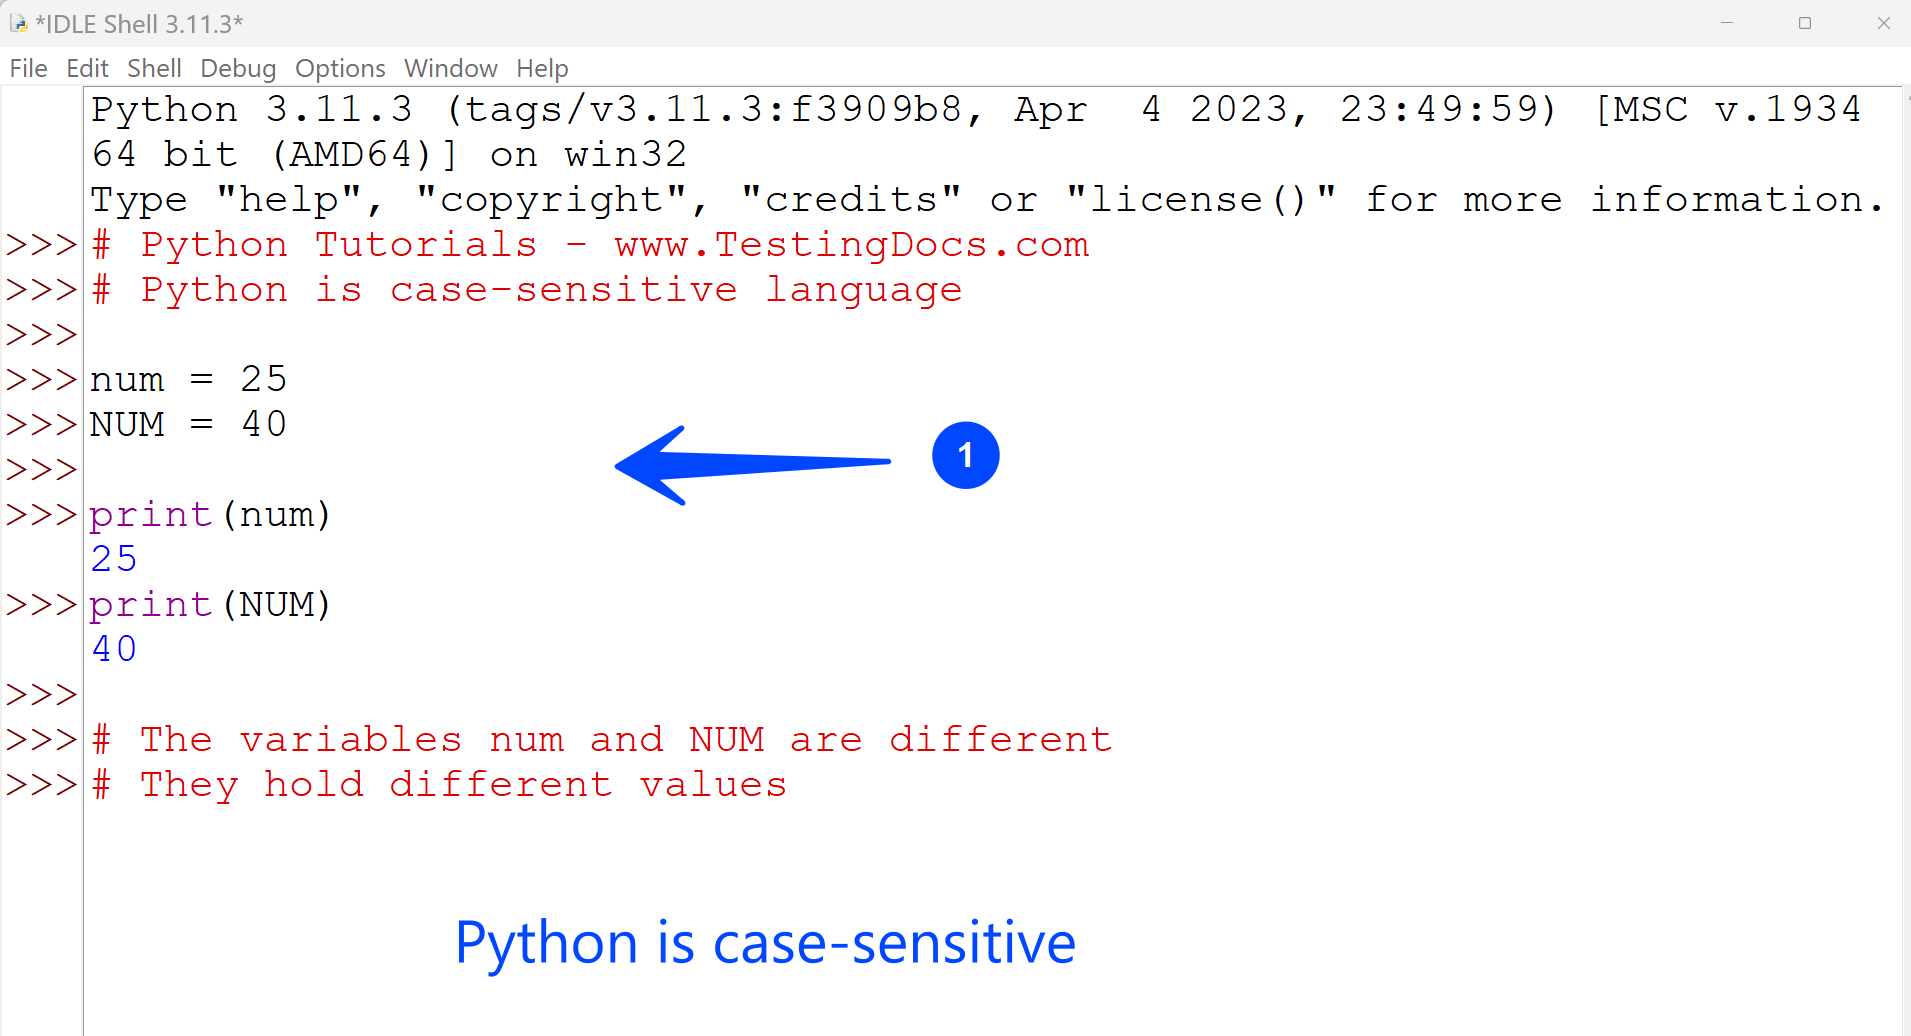 Python is case-sensitive